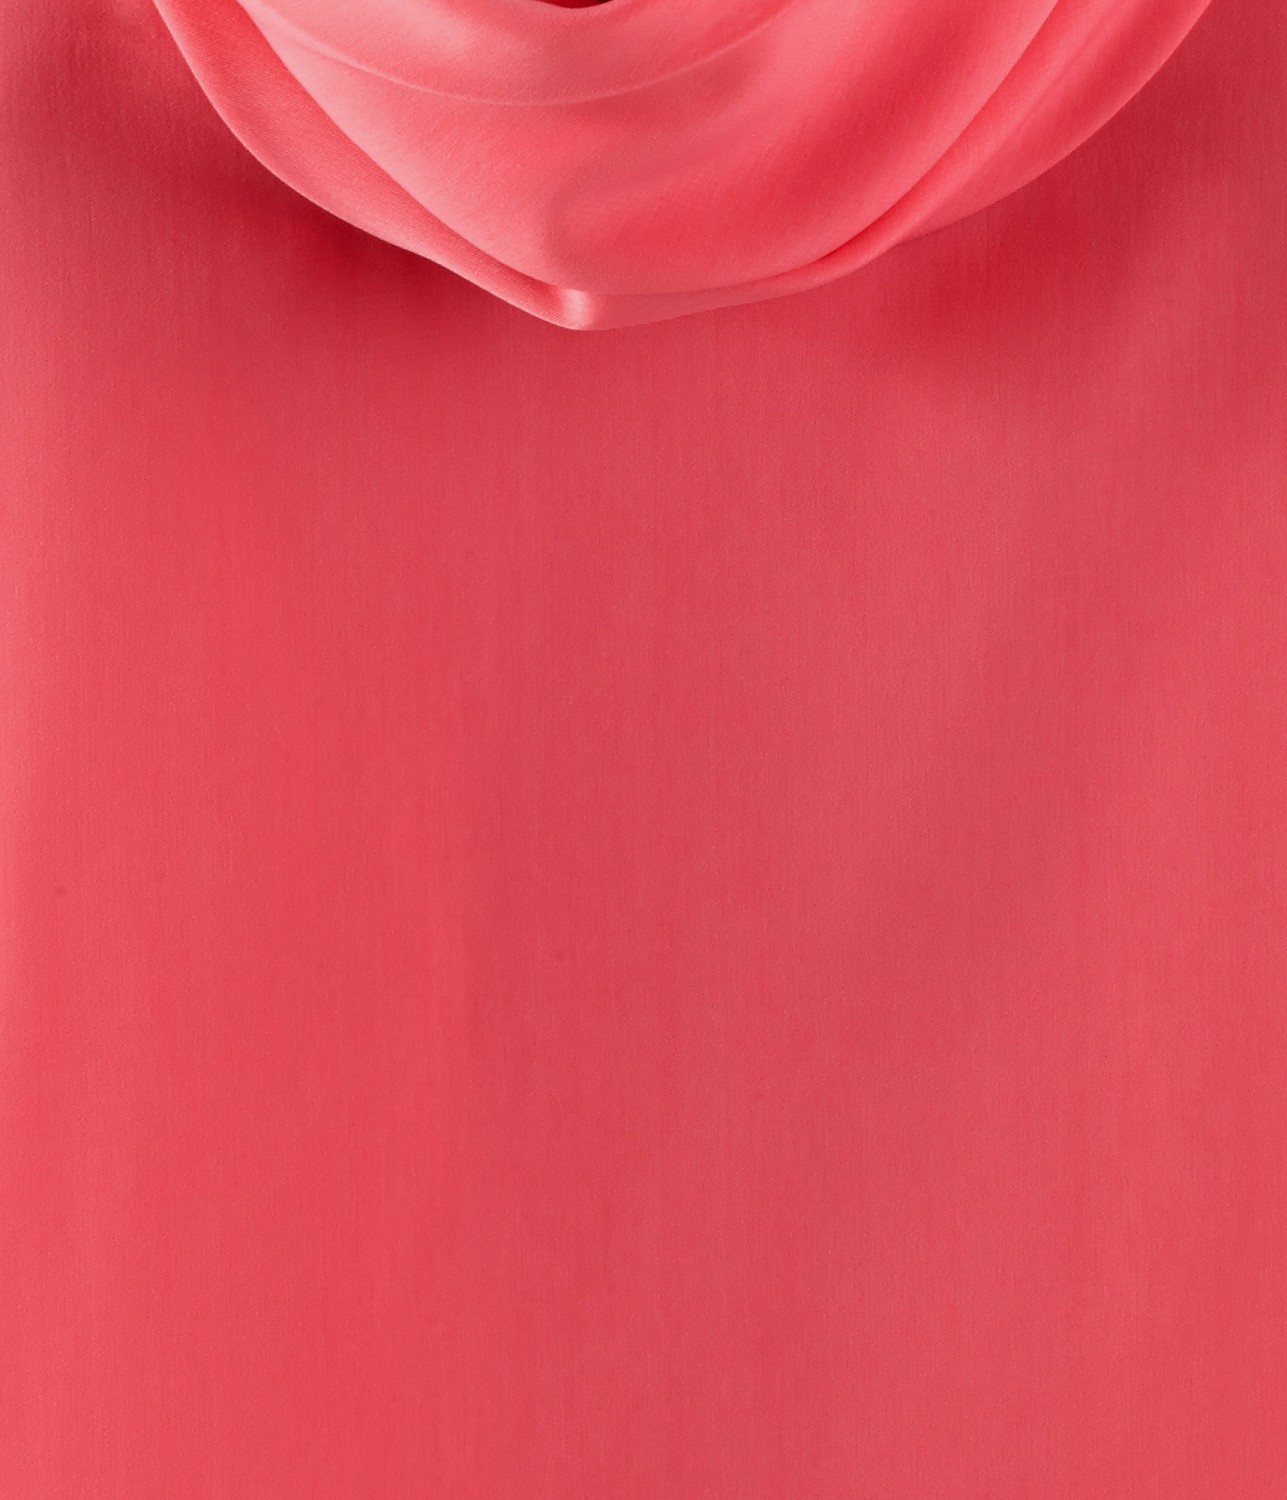 Camaieu pink egyszínű női blúz 2013.8.10 fotója